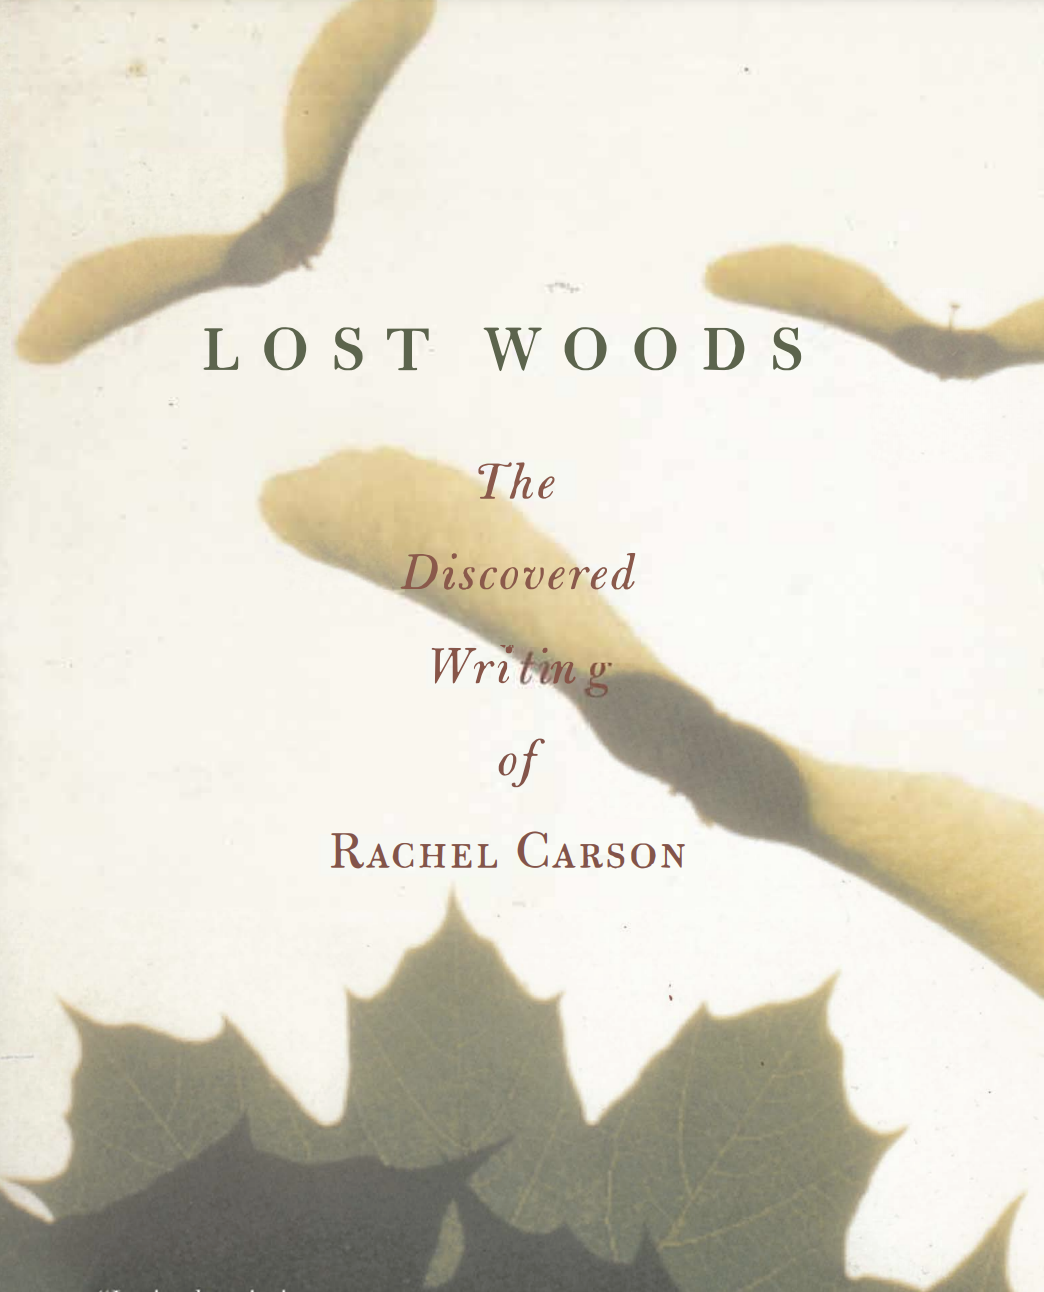 Rachel Carson, "Clouds," Lost Woods (Copy)